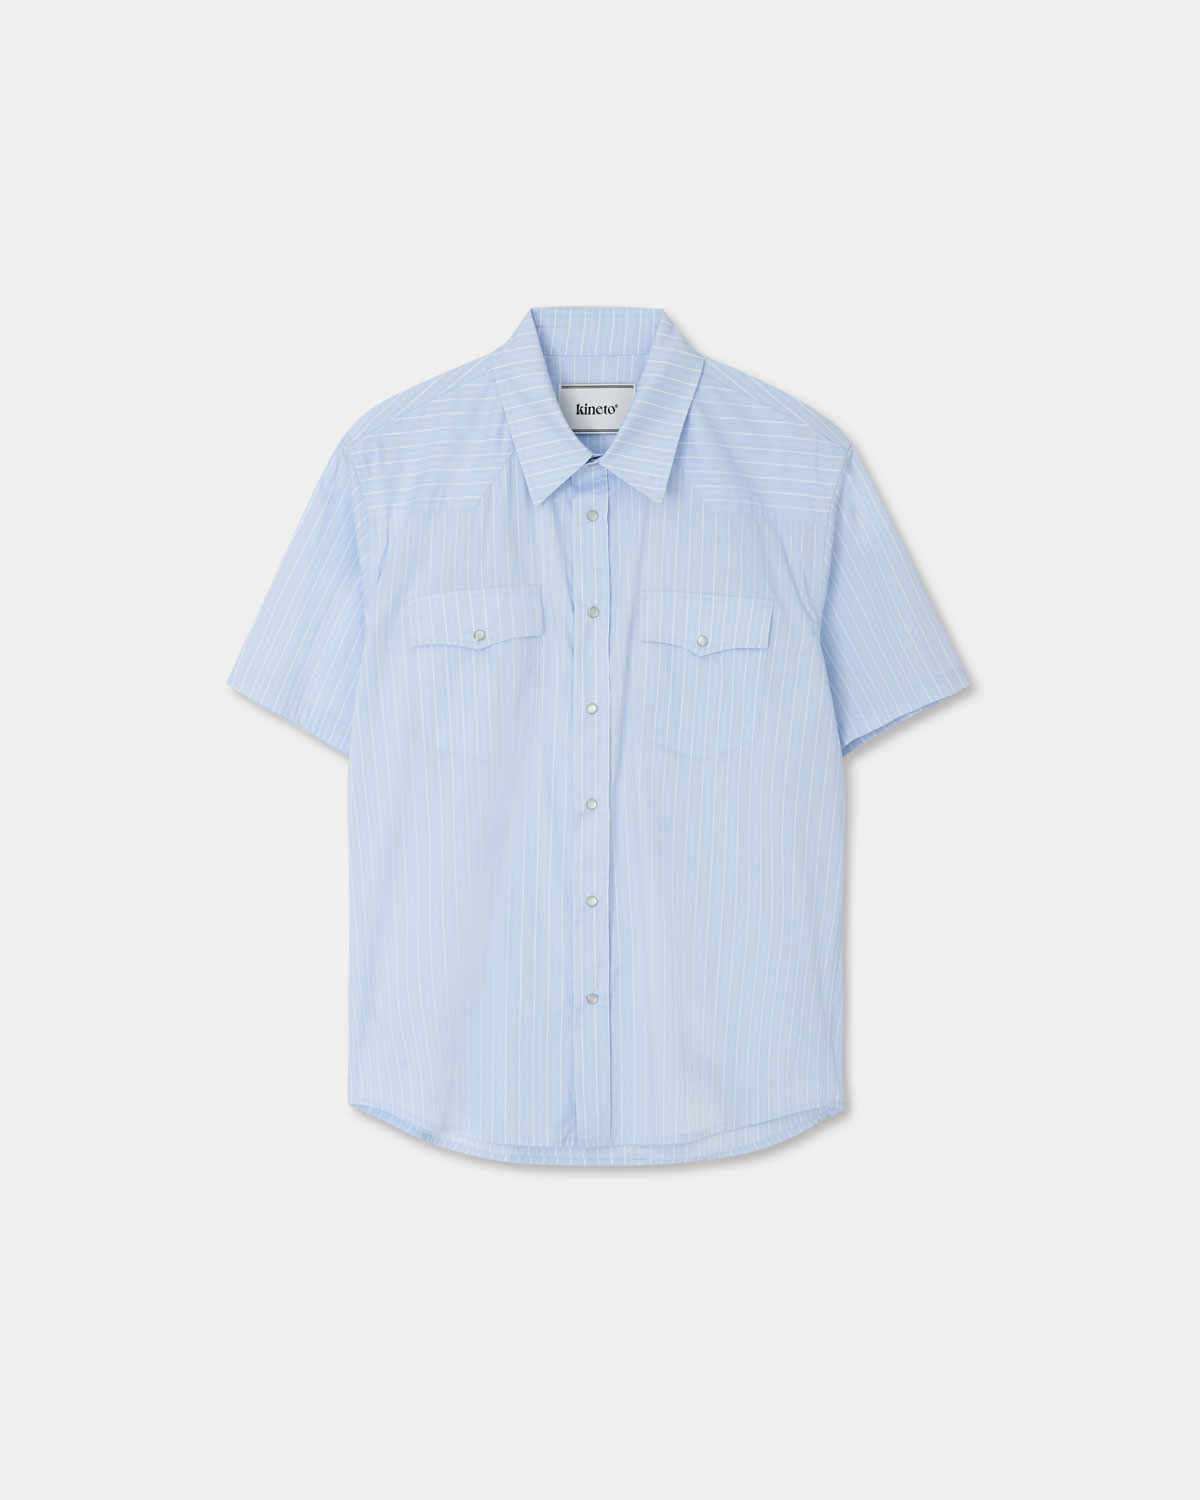 Western Stripe Pattern Shirt_Sky Blue